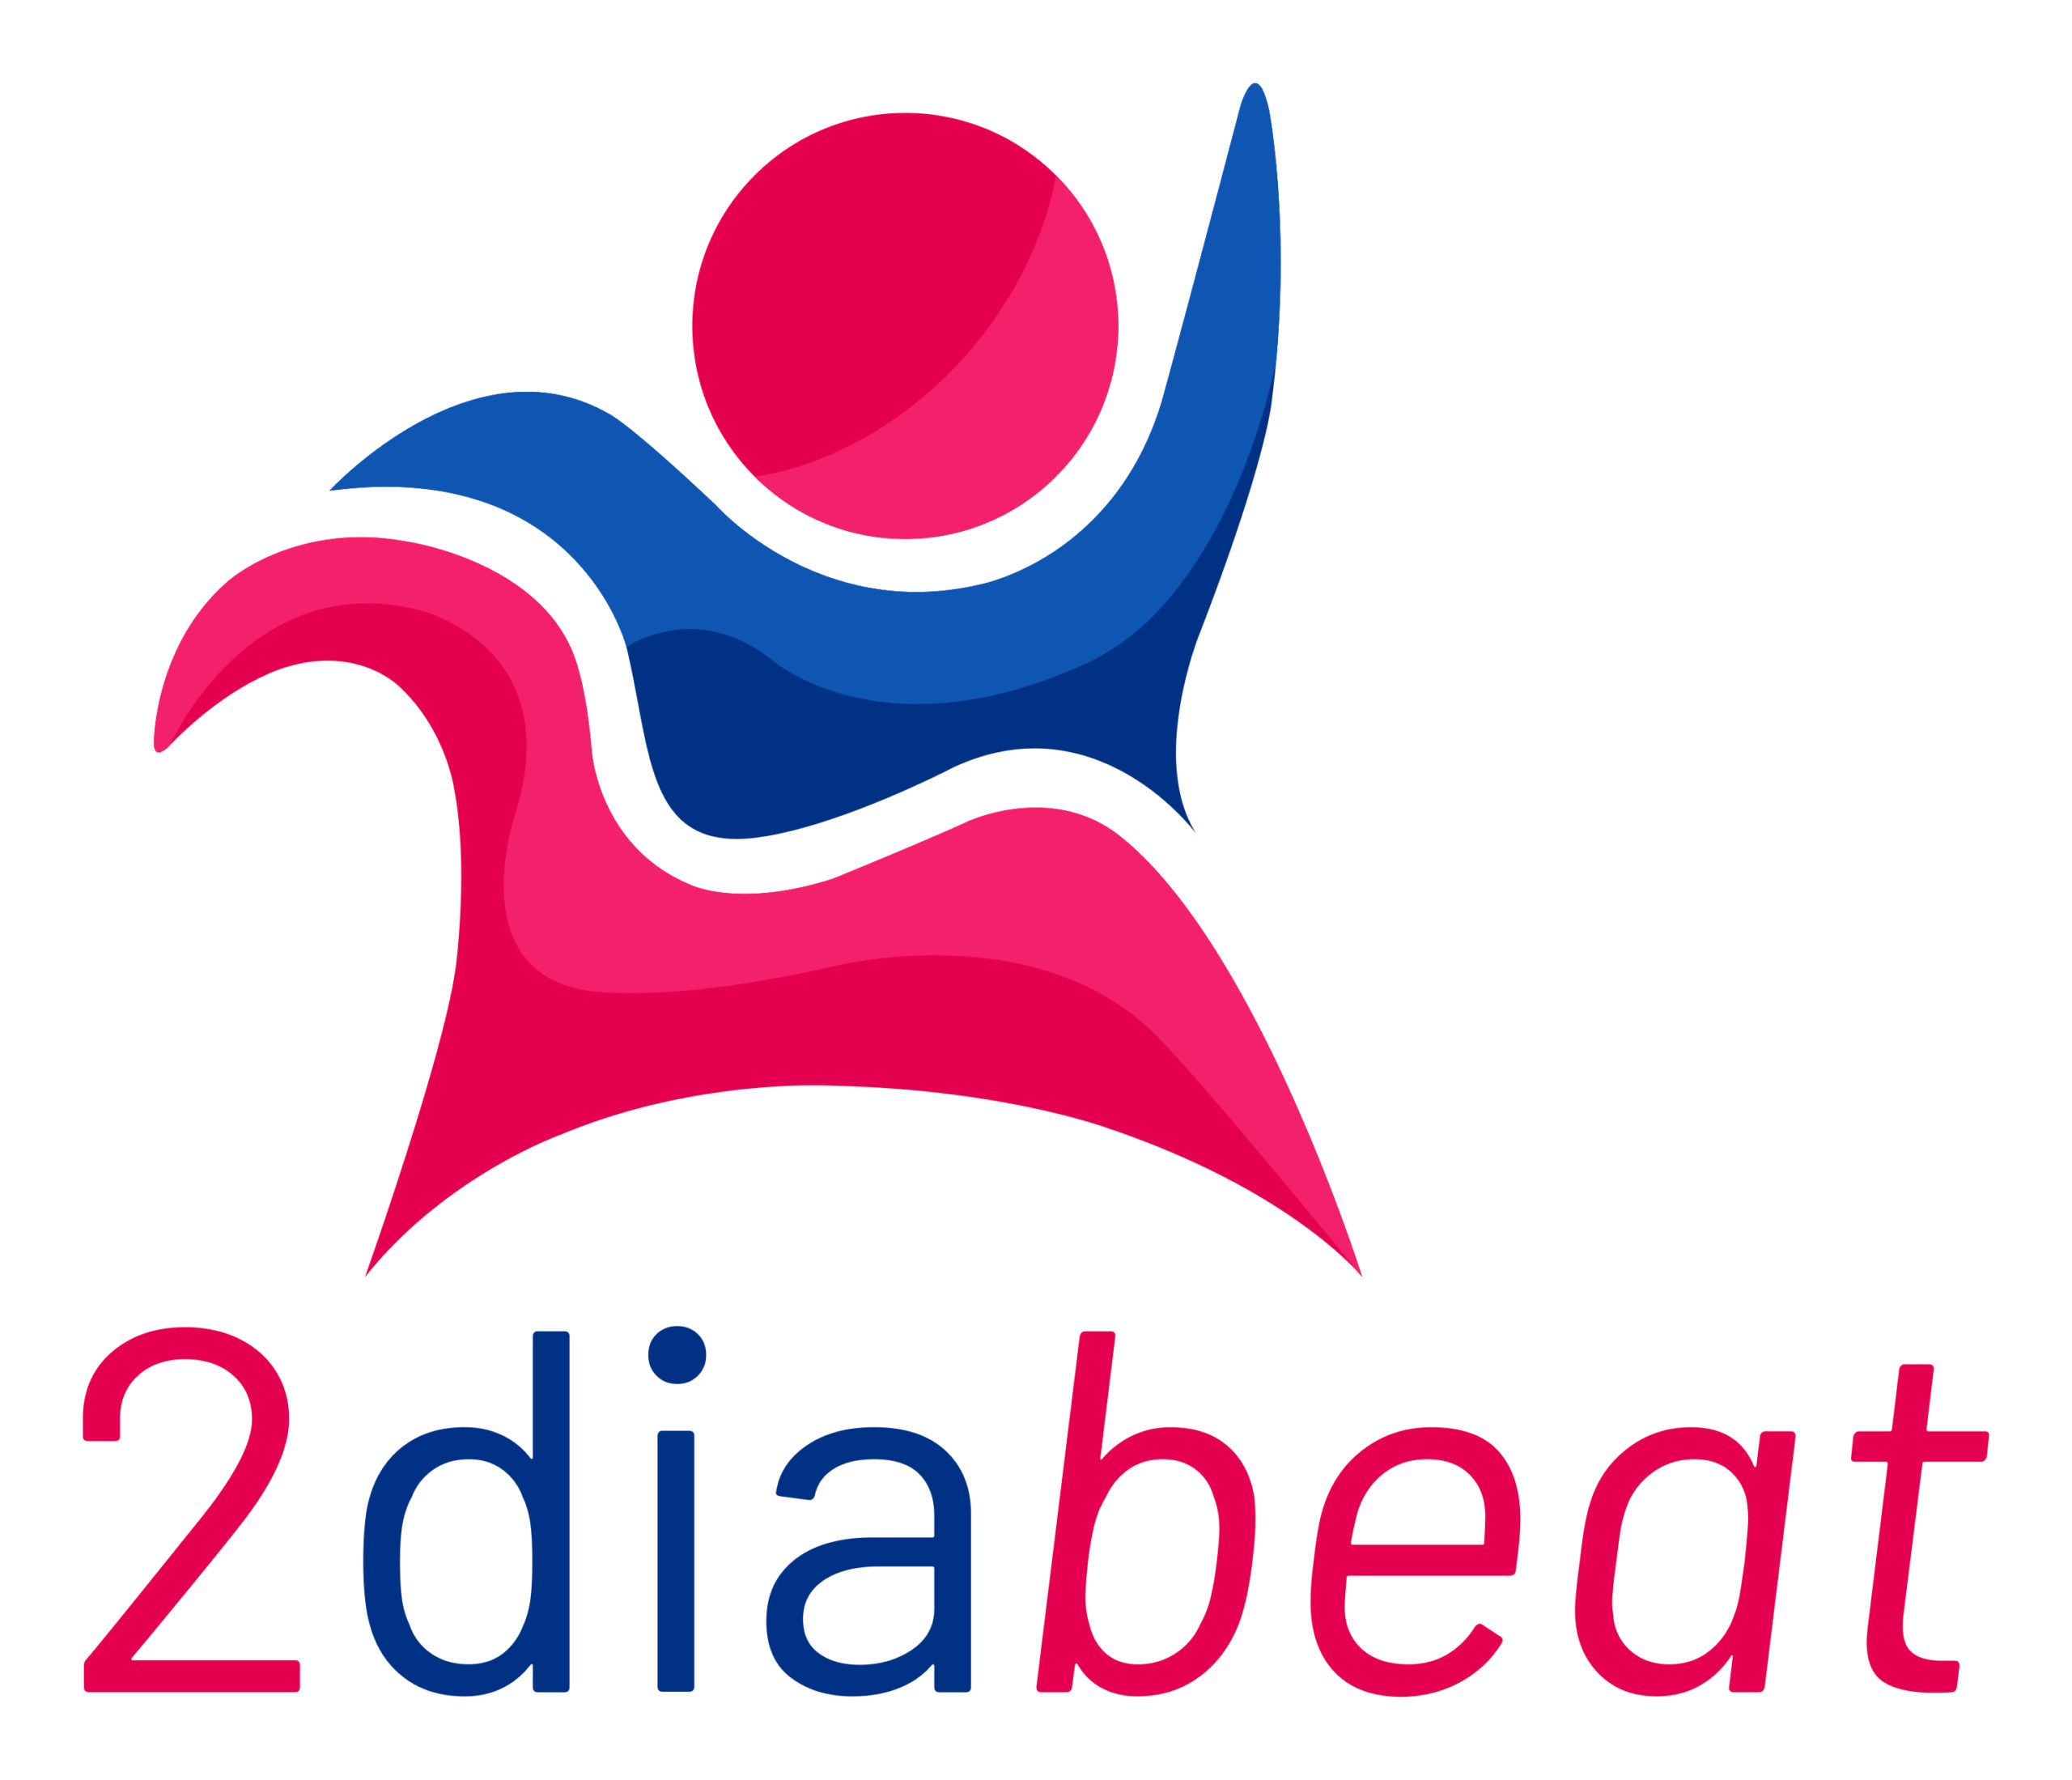 2diabeat: rapportage ontwerpfase & webinar